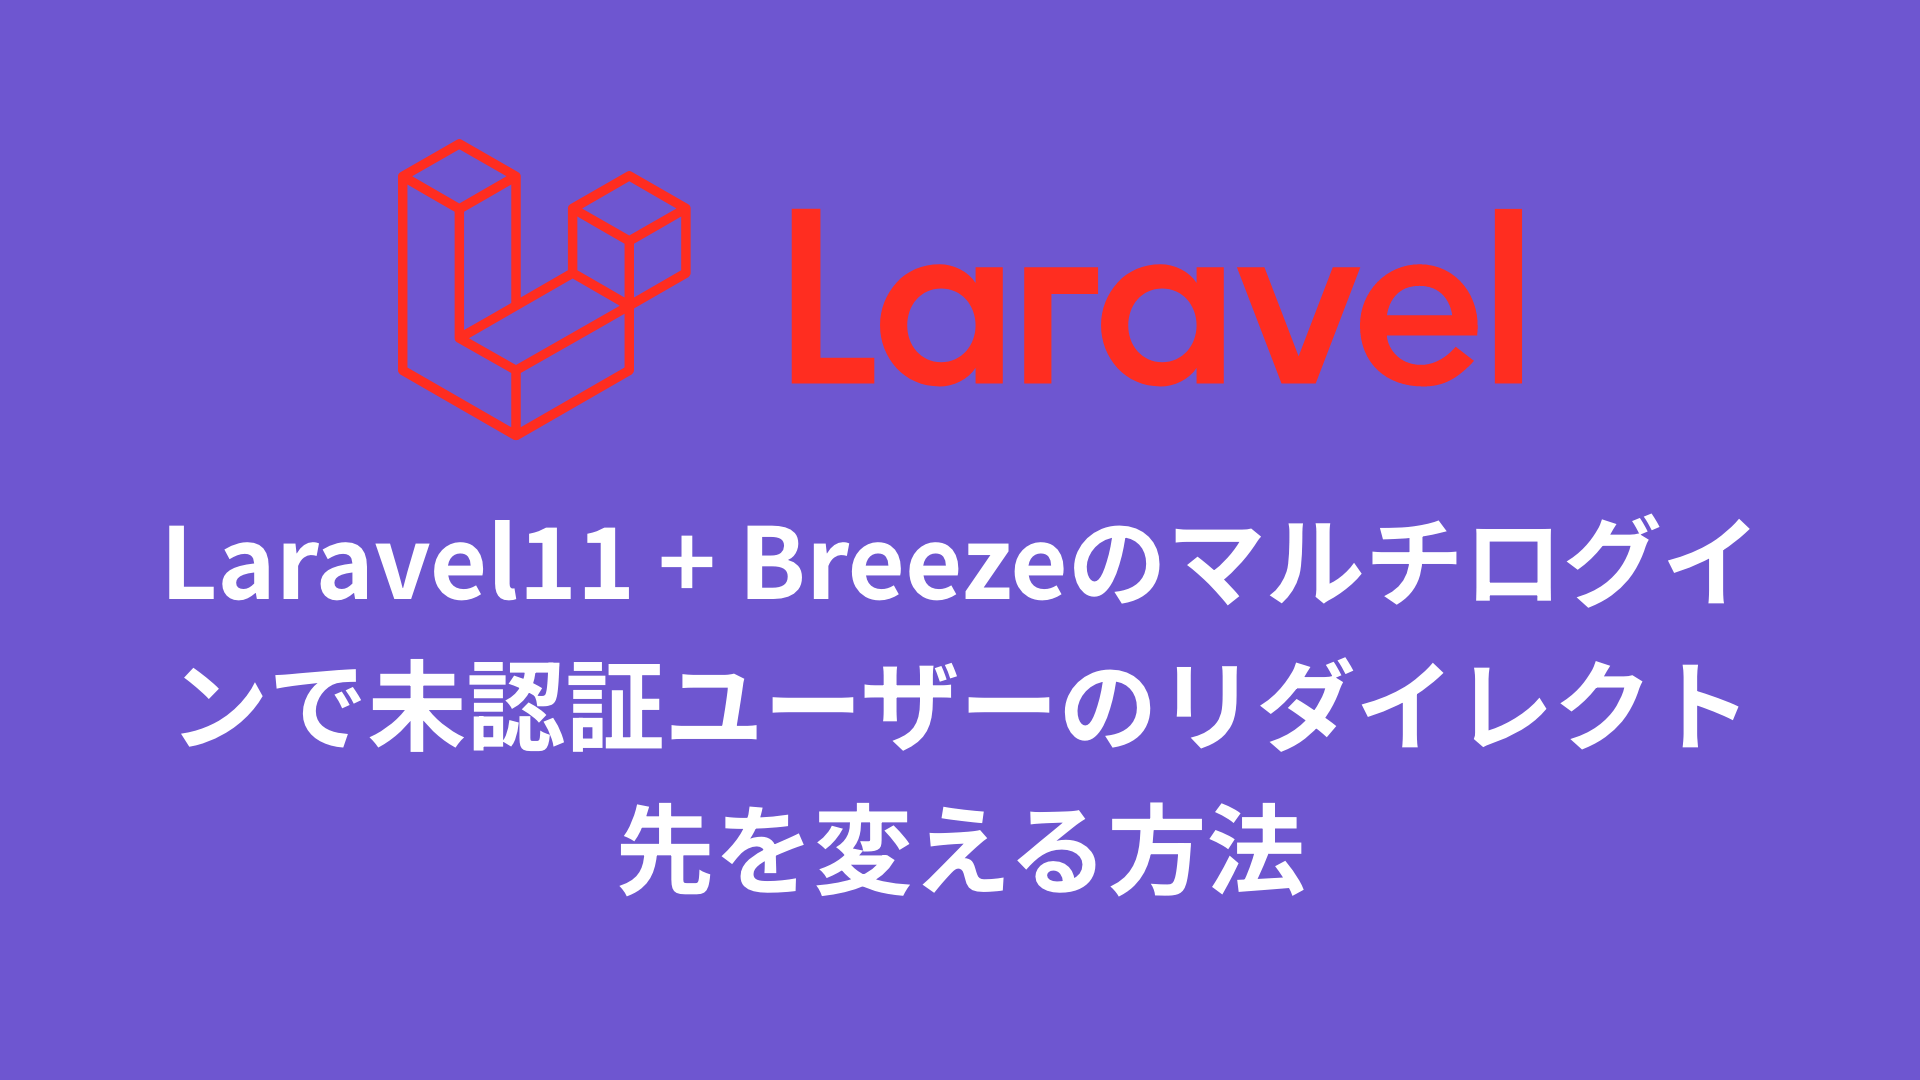 Laravel11 + Breezeのマルチログインで未認証ユーザーのリダイレクト先を変える方法のサムネイル画像